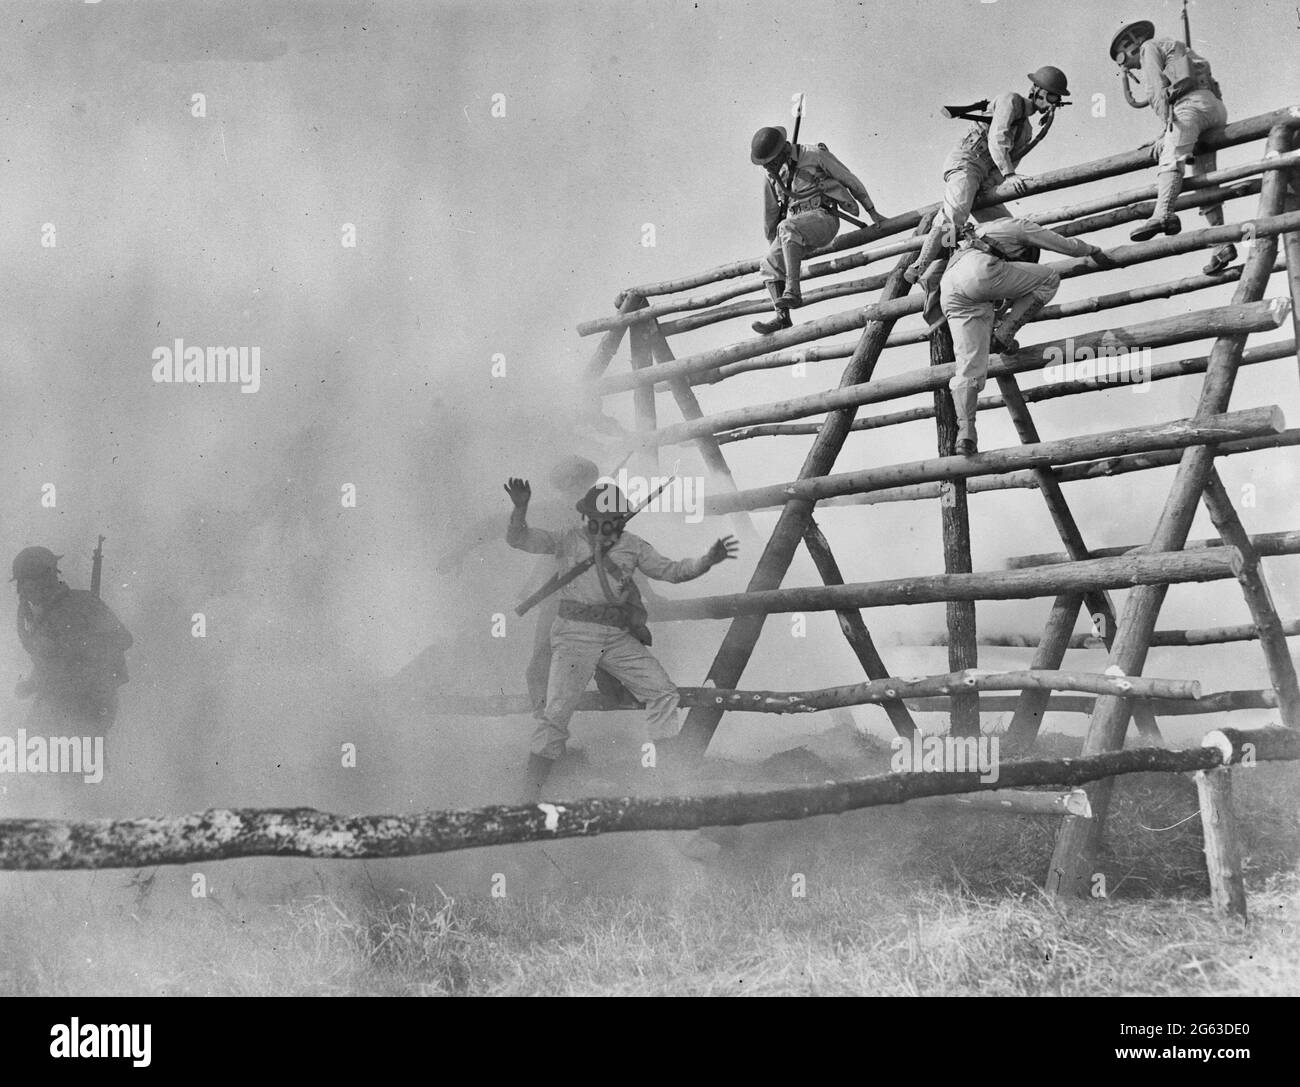 Scott Field, Illinois. Les troupes du Commandement de l'entraînement technique des Forces aériennes de l'Armée de terre surmontant facilement le « roost de la turquie », malgré l'équipement complet et les masques à gaz. Perceuse pour masque à gaz, vers 1942 Banque D'Images